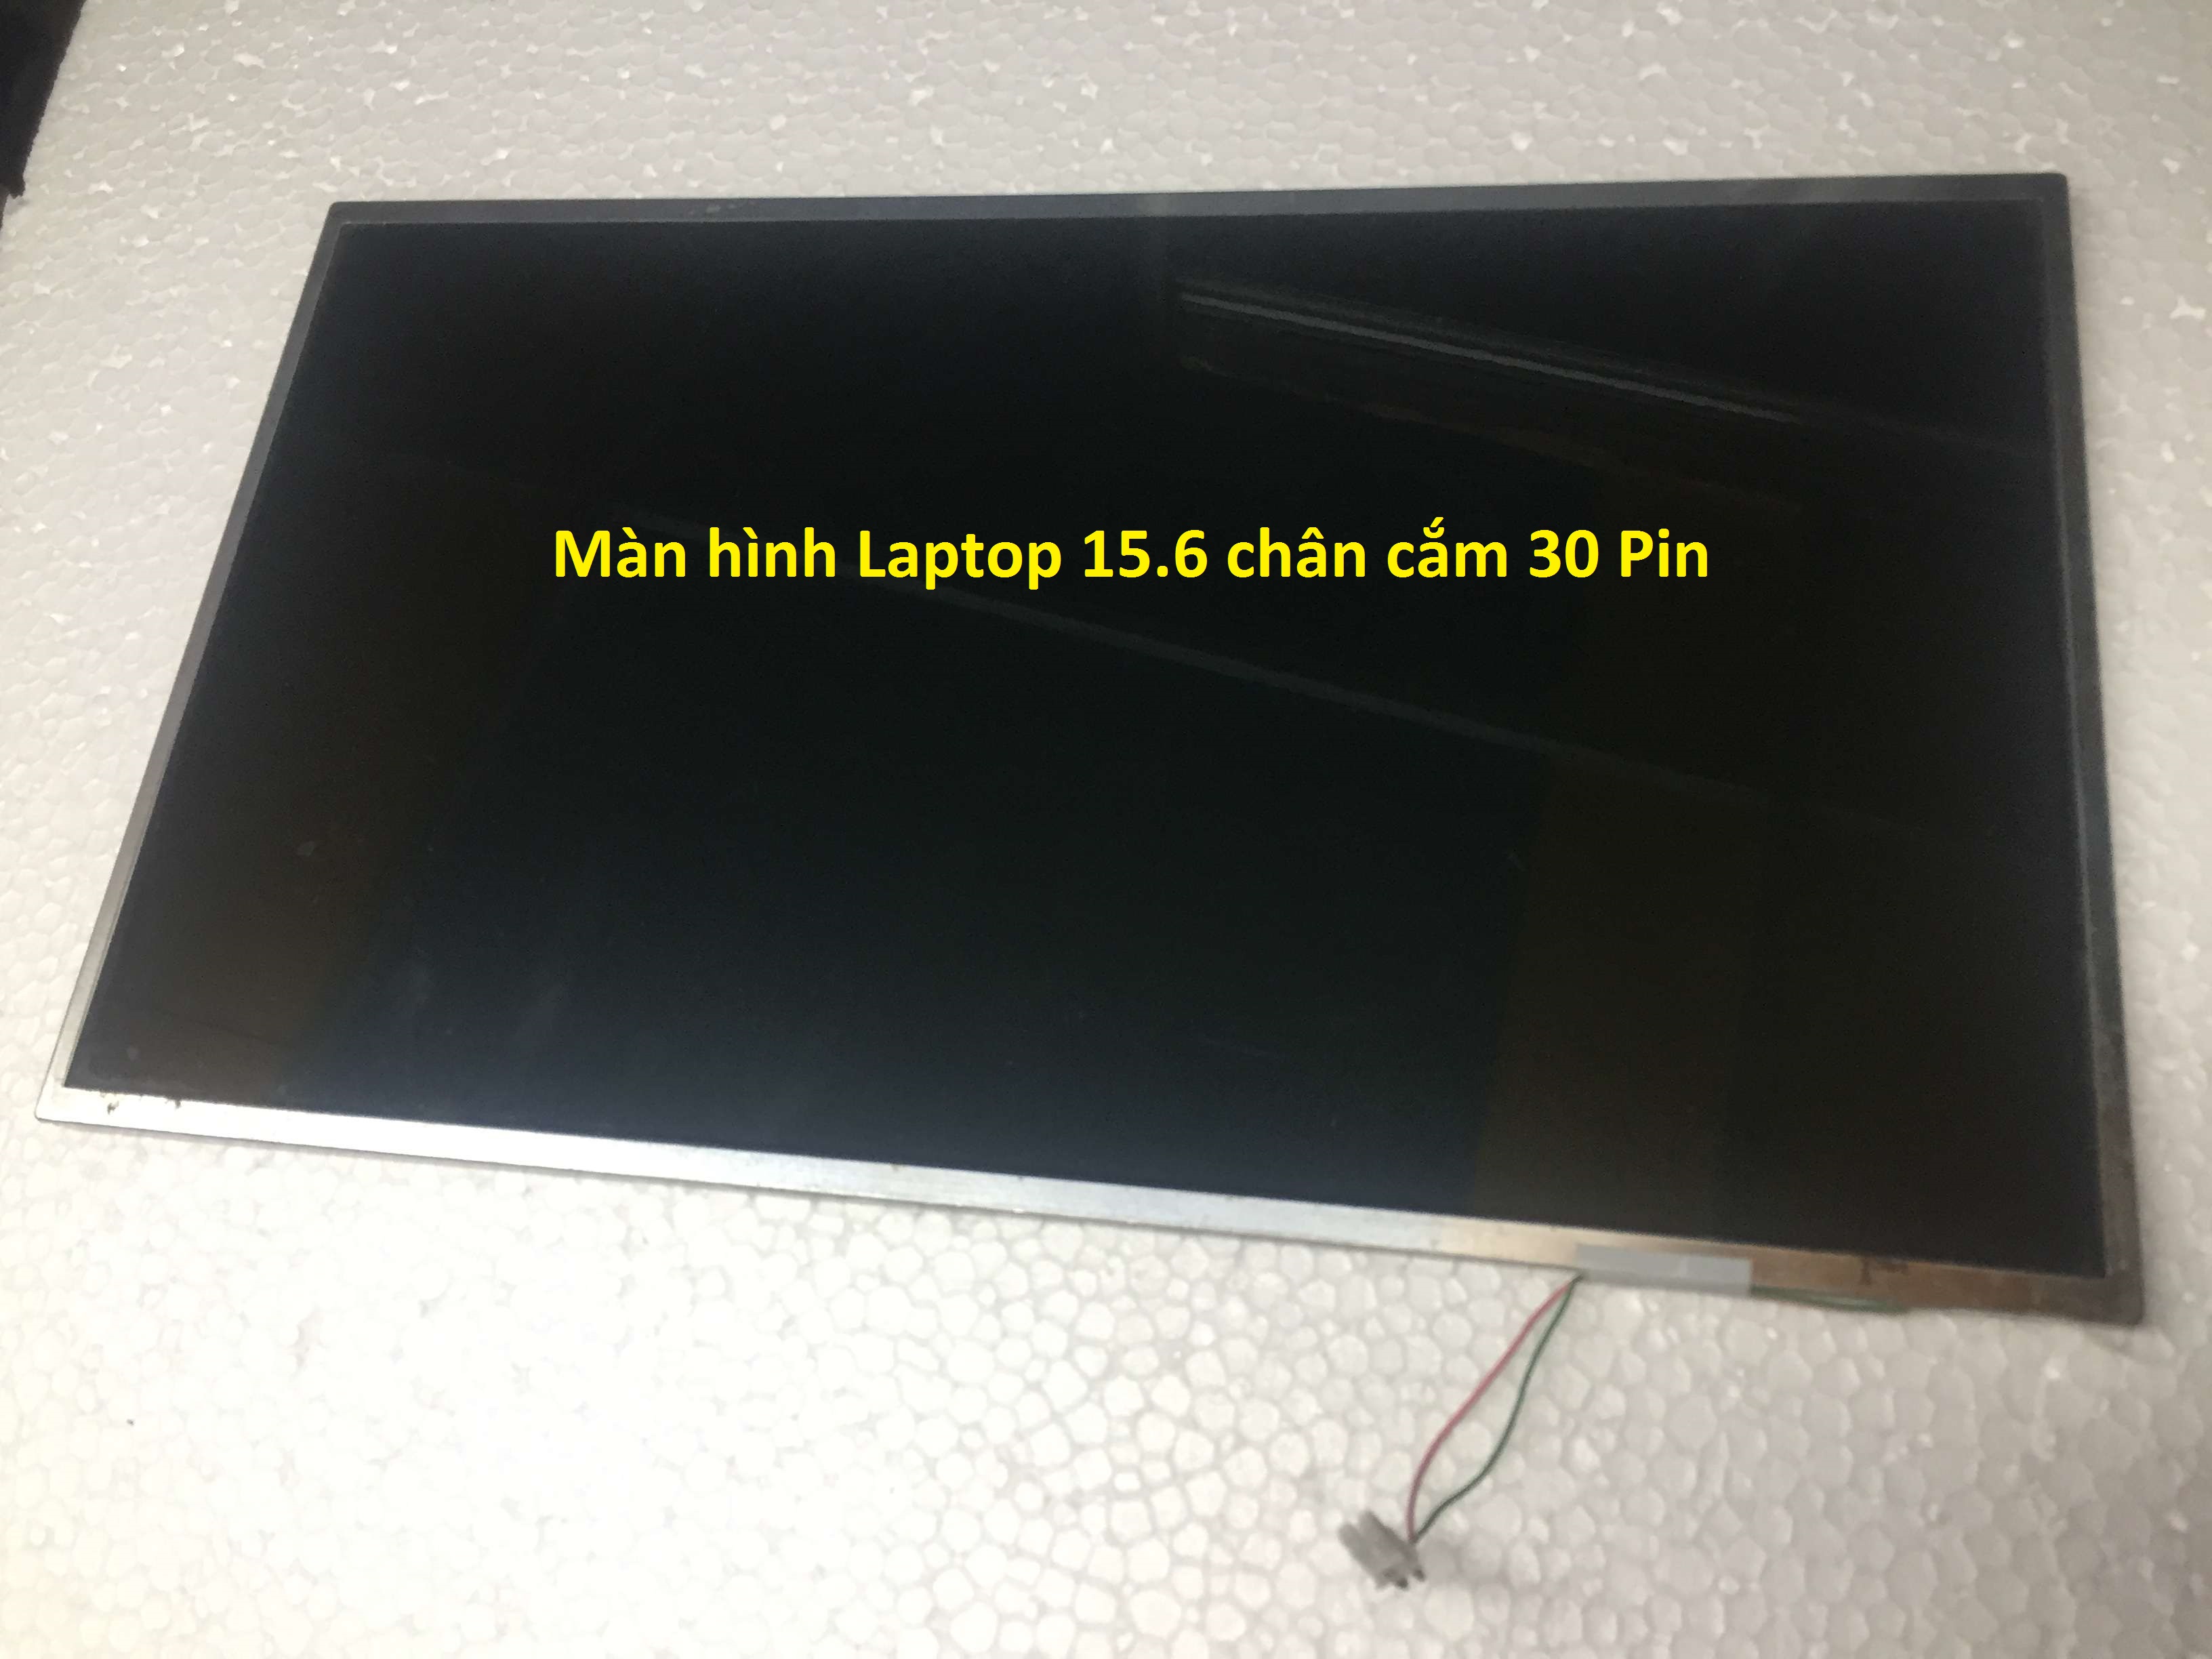 Màn hình LCD Laptop Chạy Đèn cao áp 15.6 in WIDE 30 Pin Sáng Đẹp